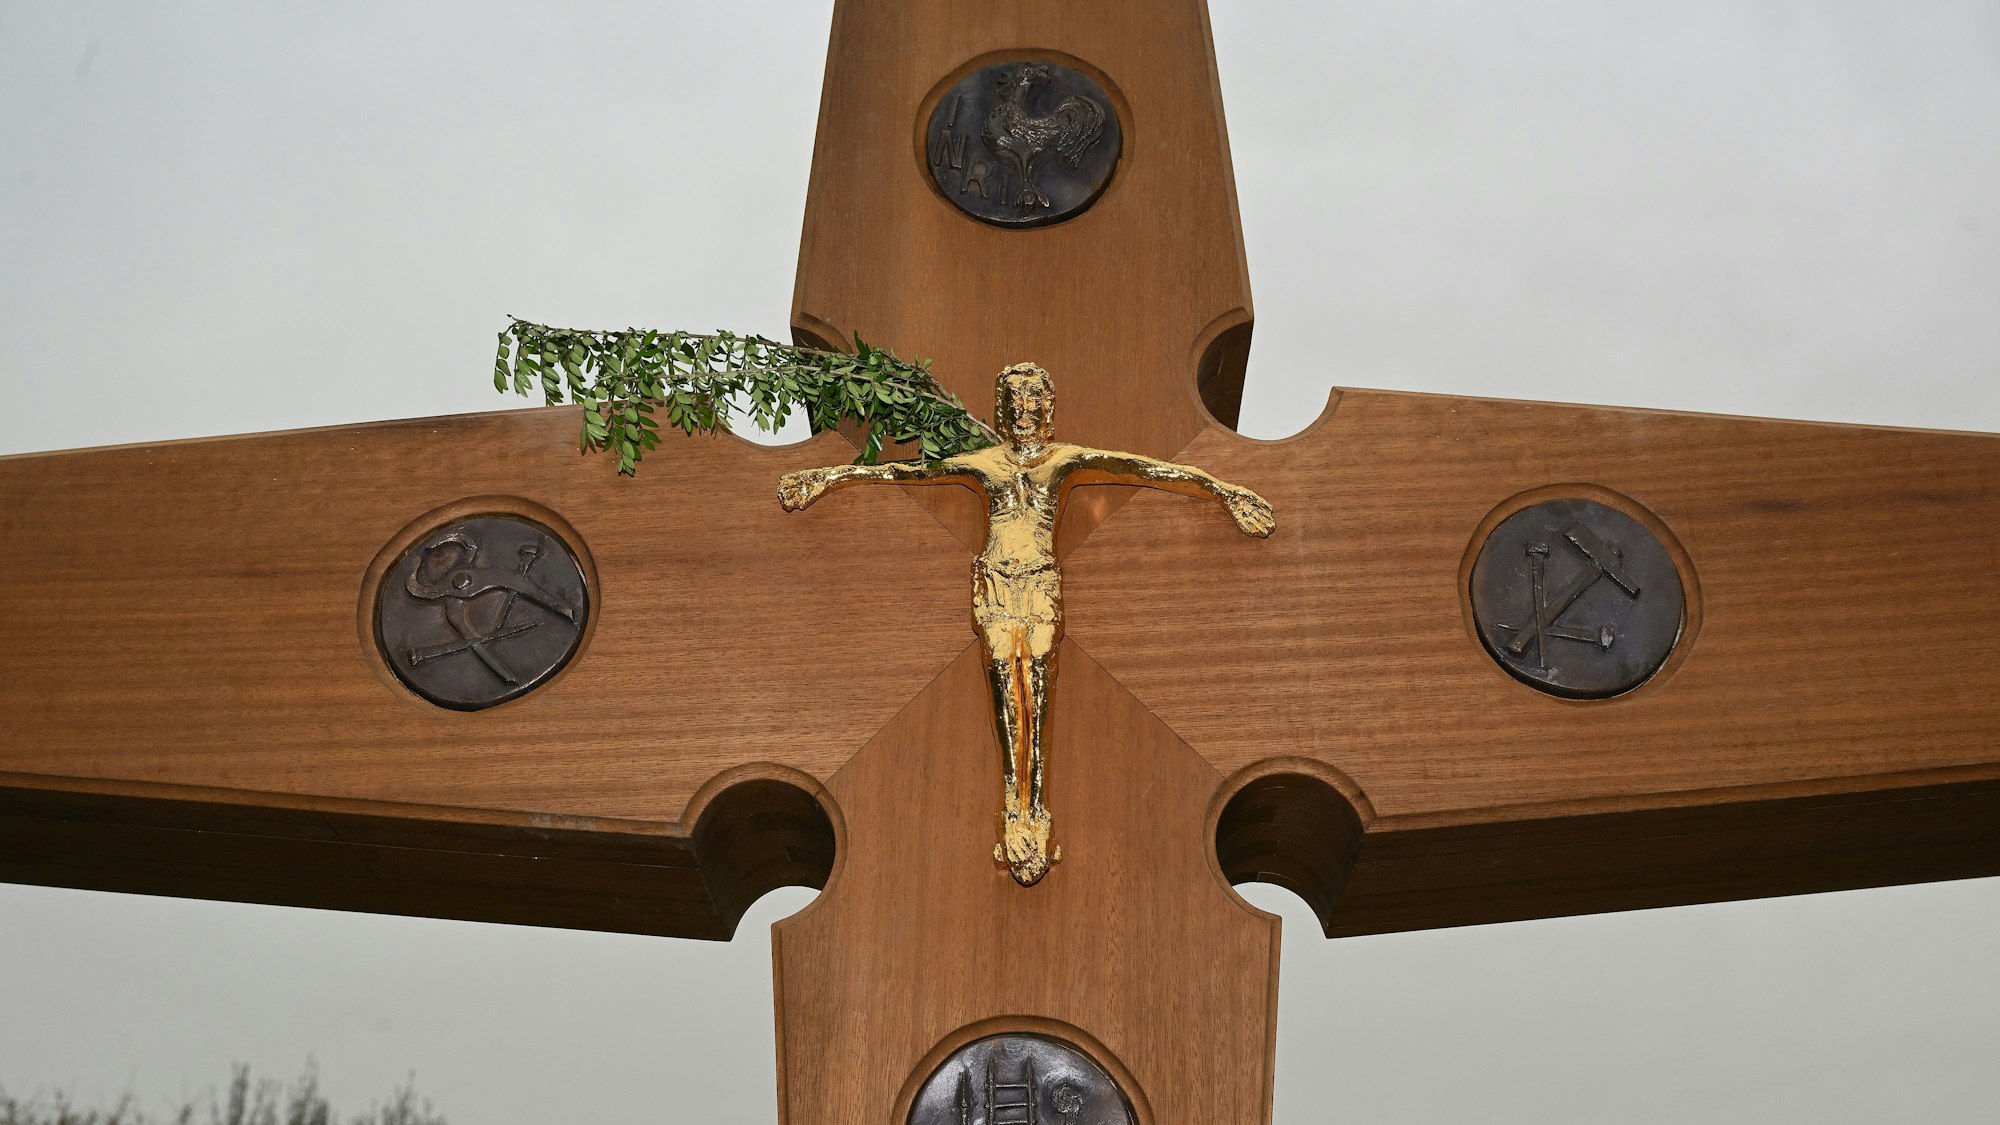 Das Wegekreuz zeigt eine vergoldete Christusdarstellung.